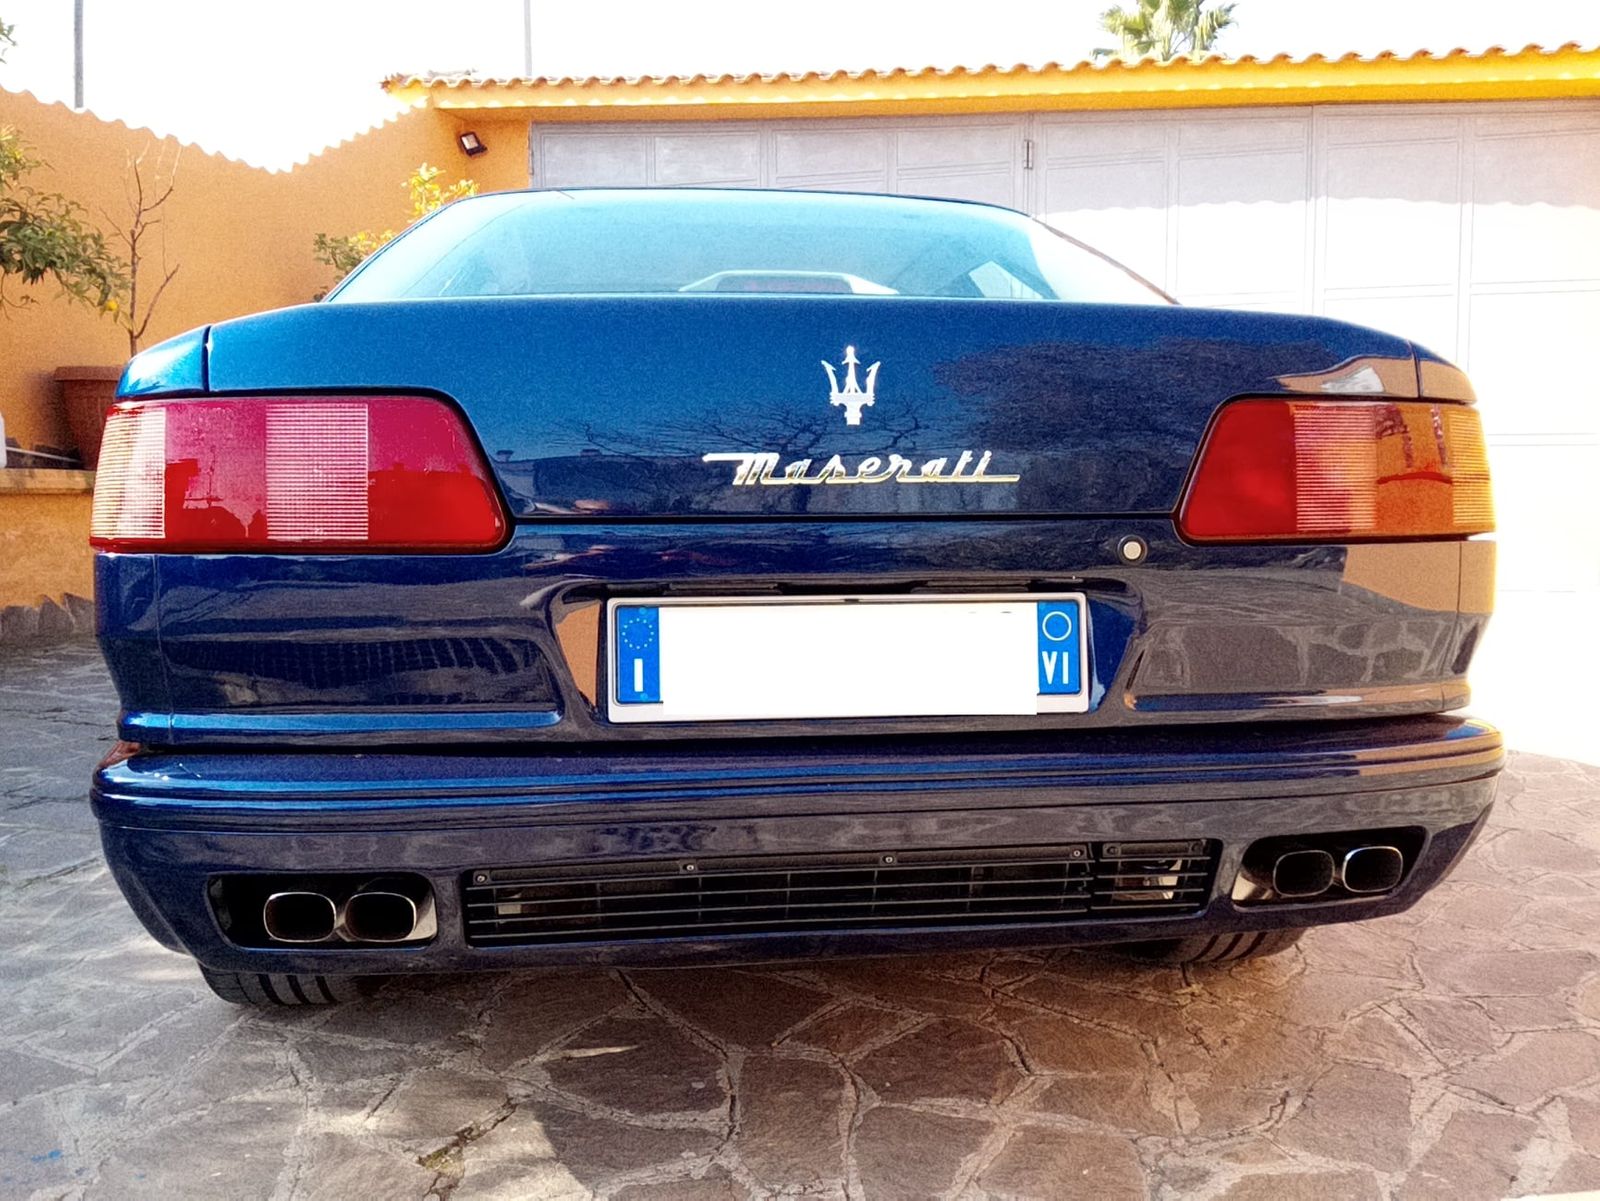 Maserati Quattroporte 3.2 V8 Evoluzione. Euro 23.500,00 + p.p.